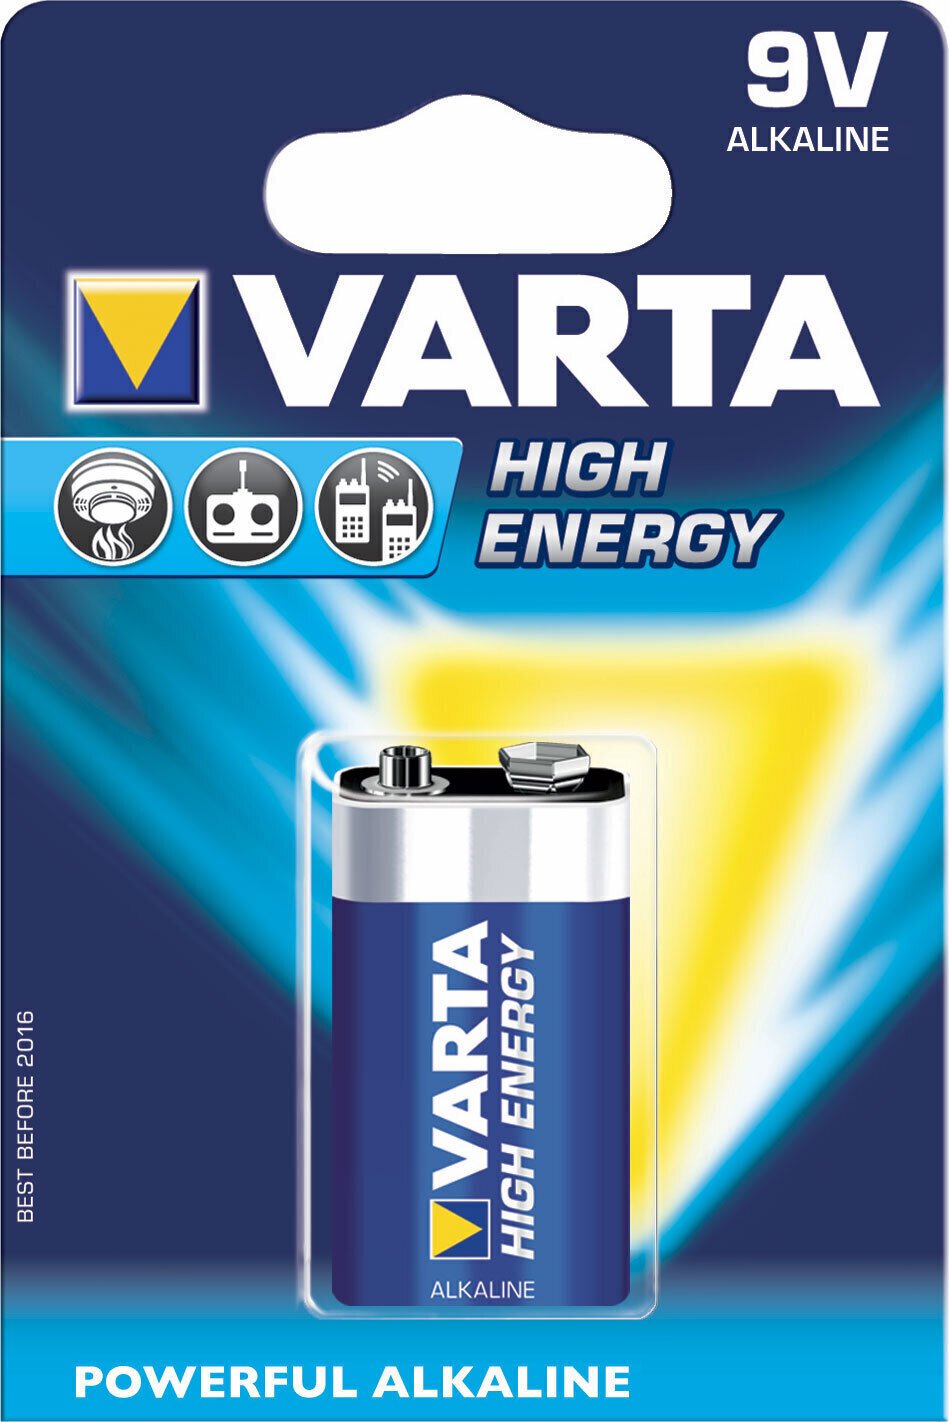 9V Batterie Varta 9V Batterie 6F22 High Energy